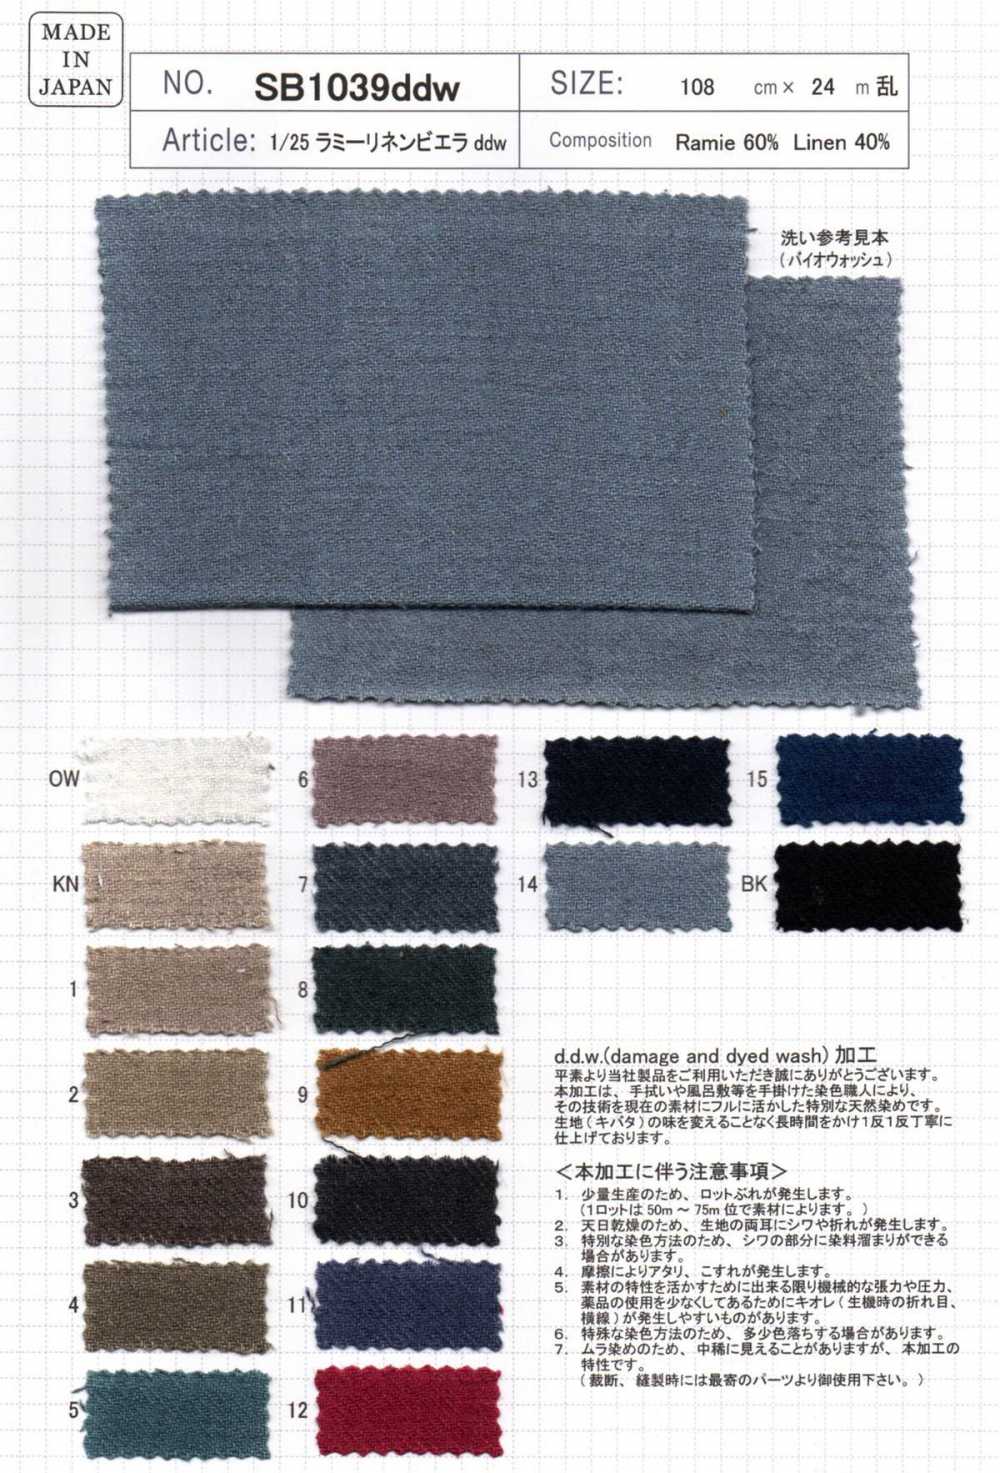 SB1039ddw 1/25 Lamy Linen Viyella Ddw[Textile / Fabric] SHIBAYA